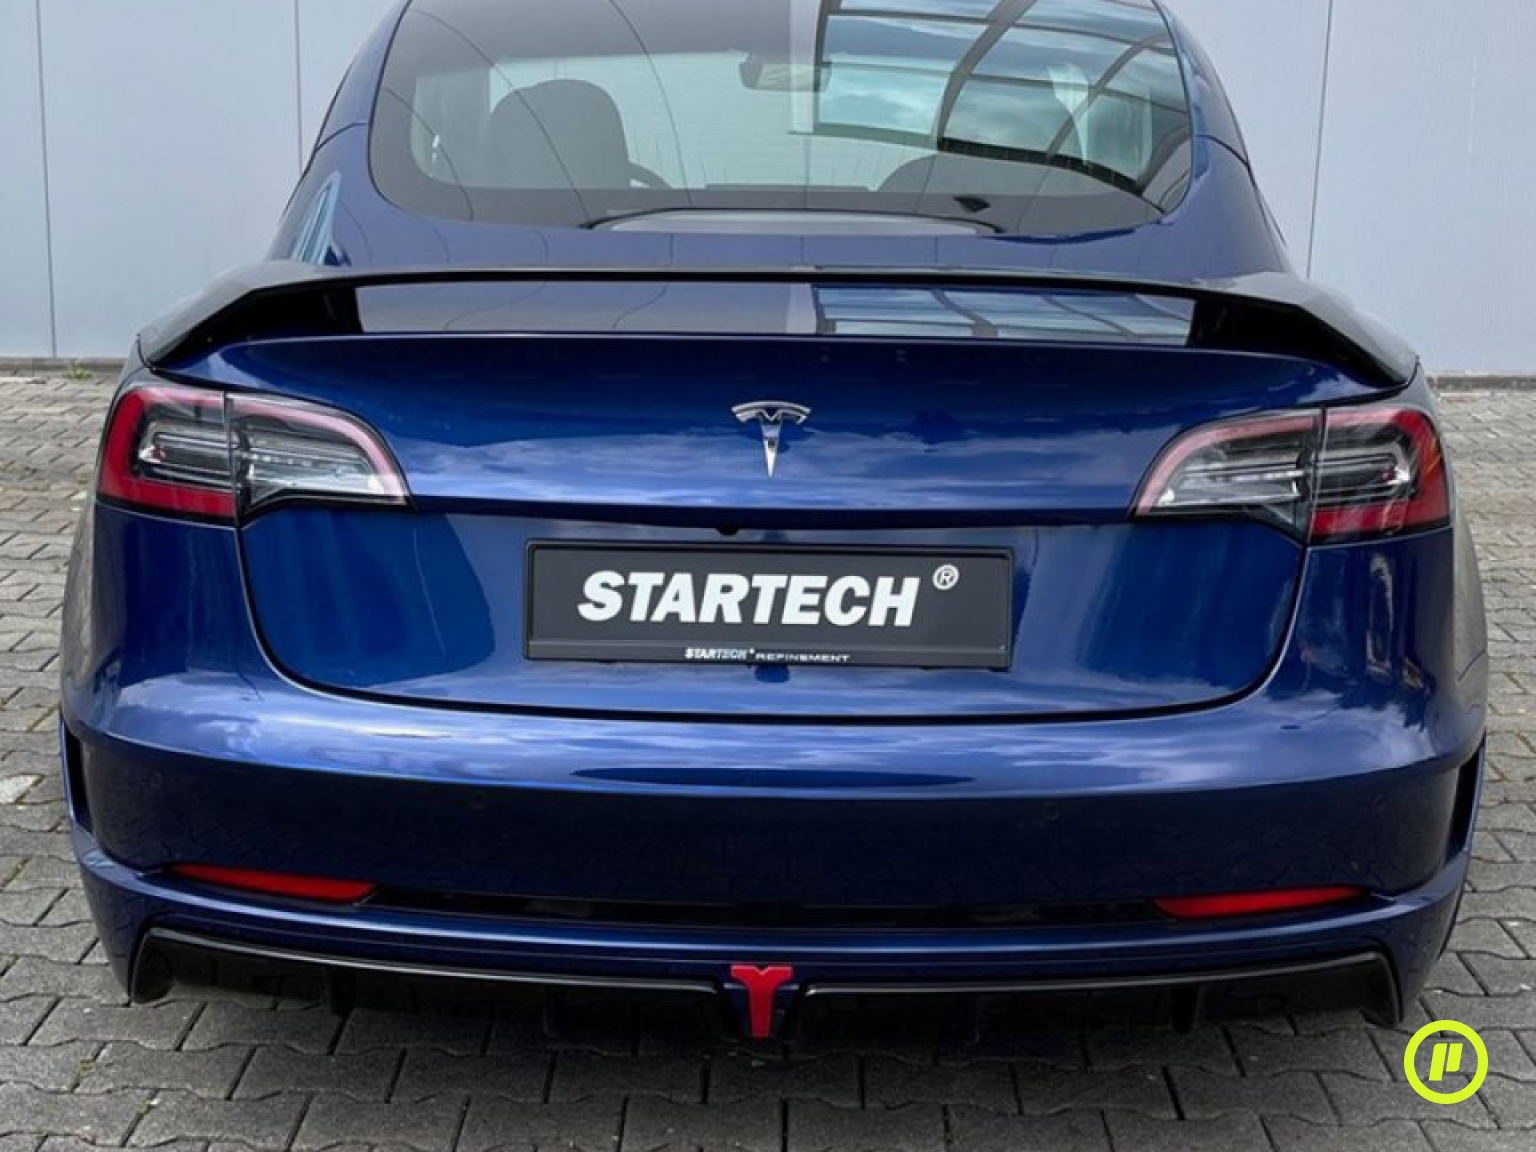 Startech Rear Spoiler for Tesla Model 3 (2017+)